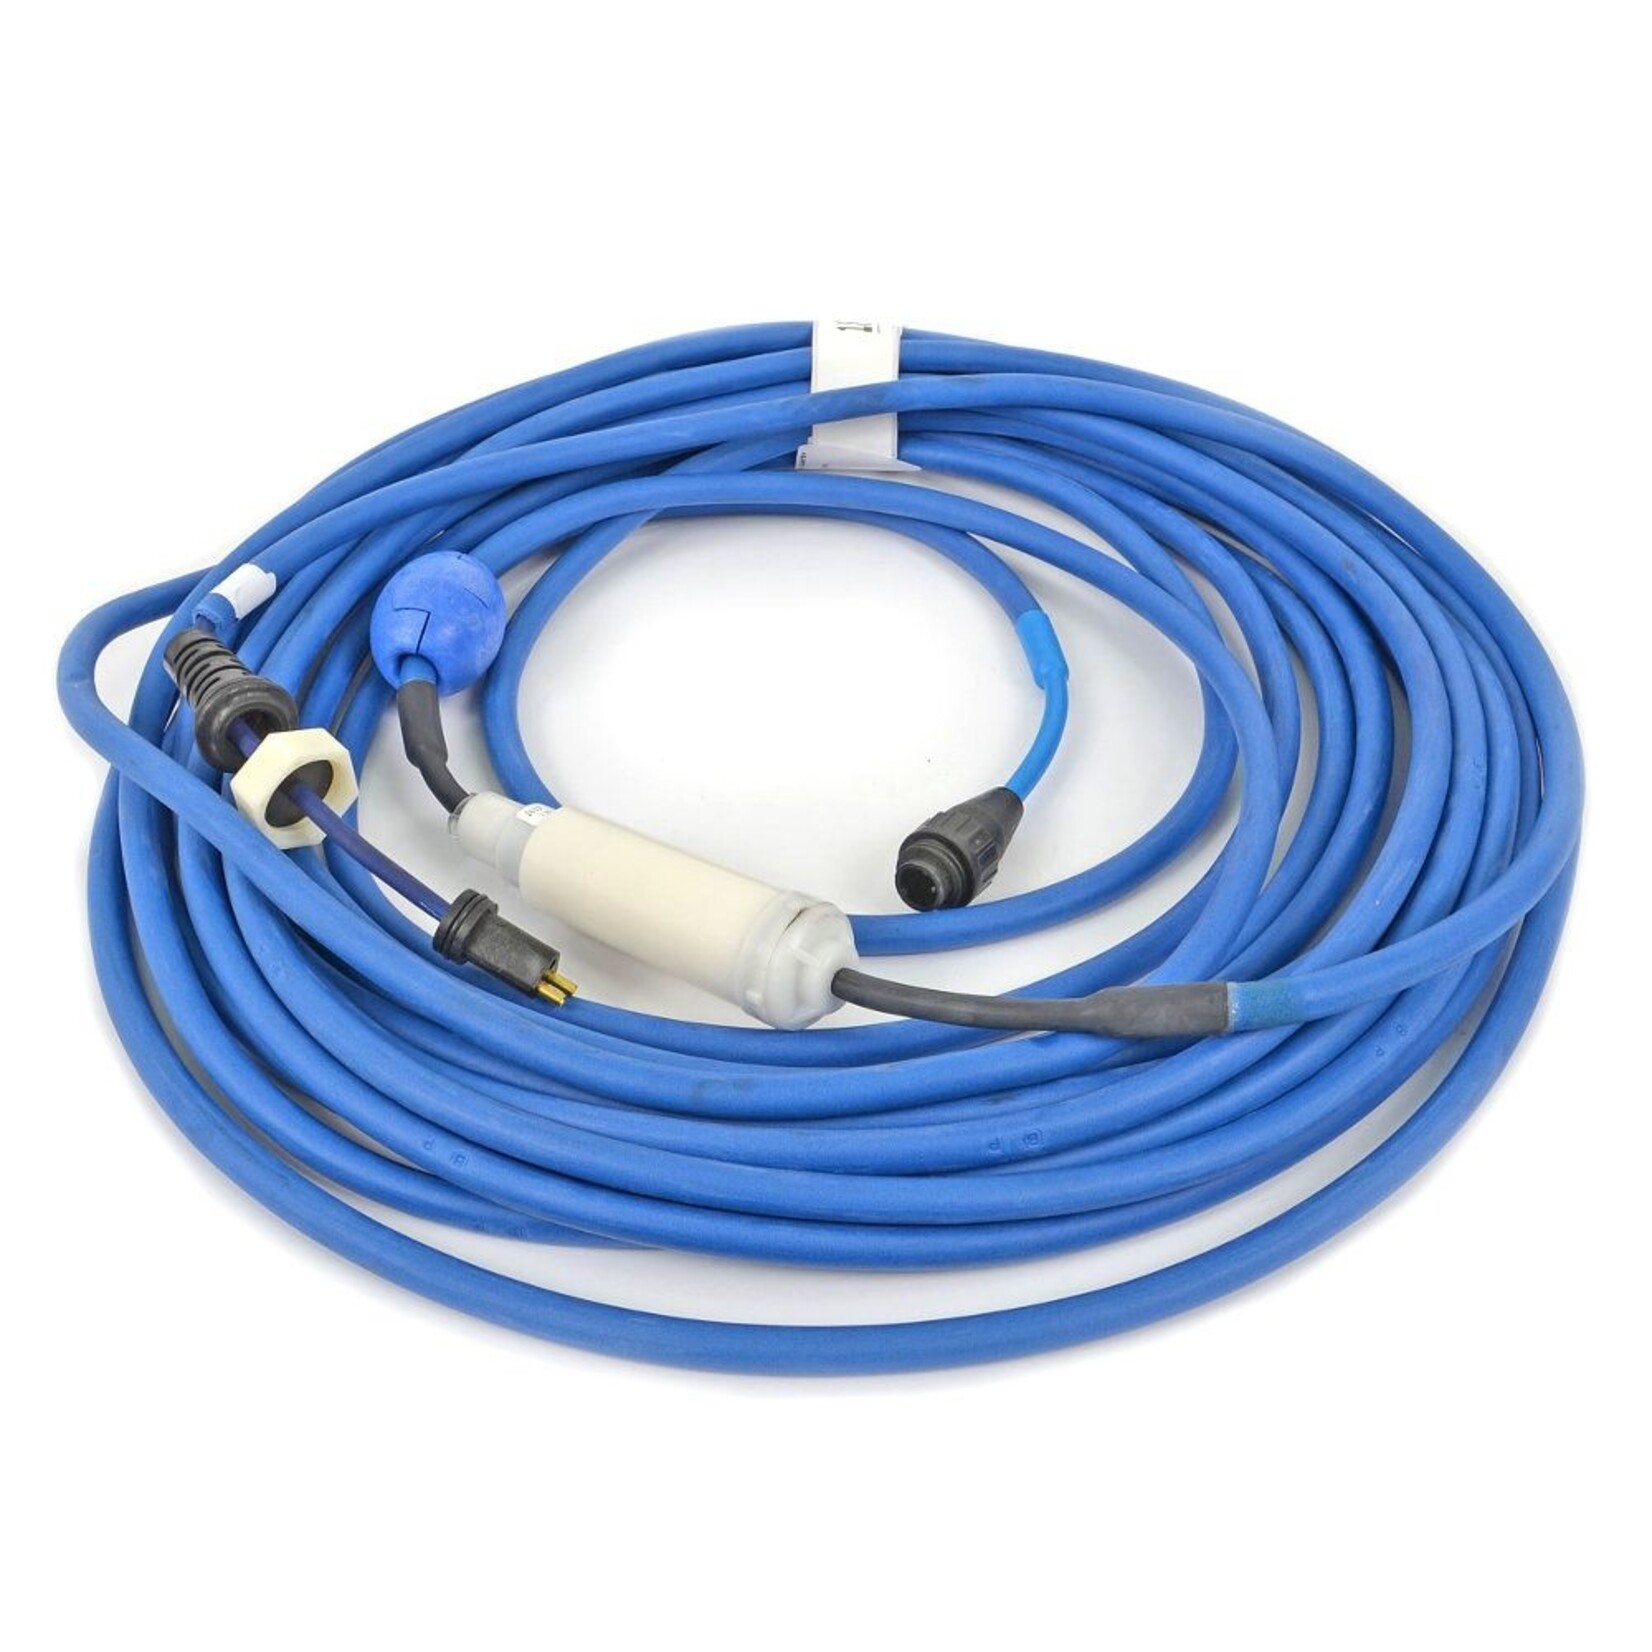 Maytronics Dolphin Maytronics 9995862-DIY Dolphin Diagnostic kabel met swivel 18 meter voor Zenit 10